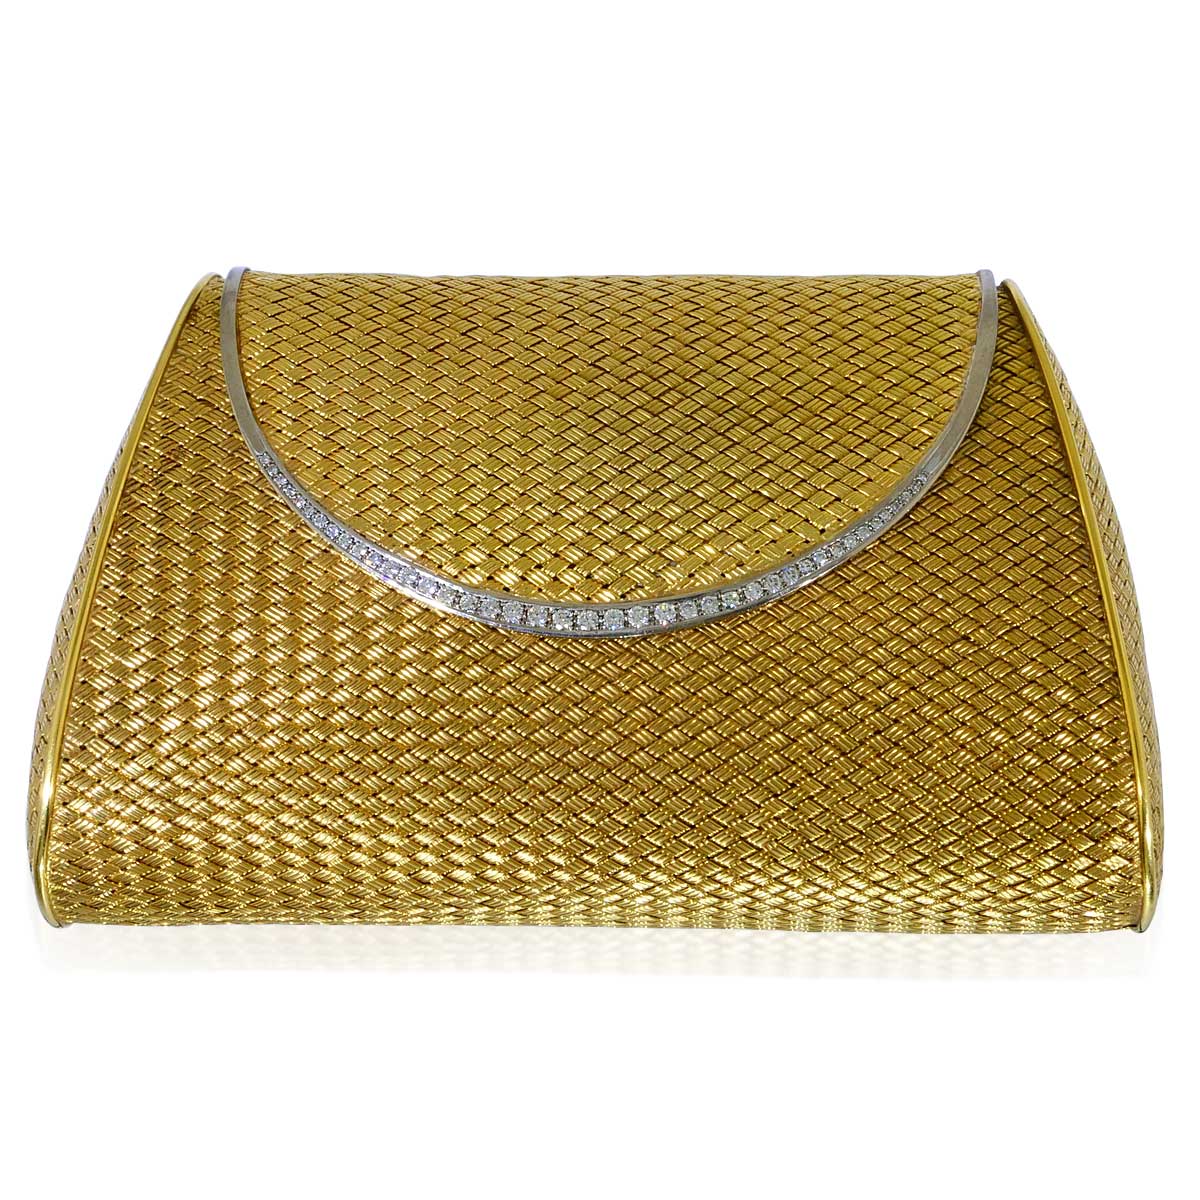 Goldene Clutch mit Spiegel, 1,26ct  Diamantborduere und Wildlederfutter| Goldtasche Abendtasche Gold|Schmuck